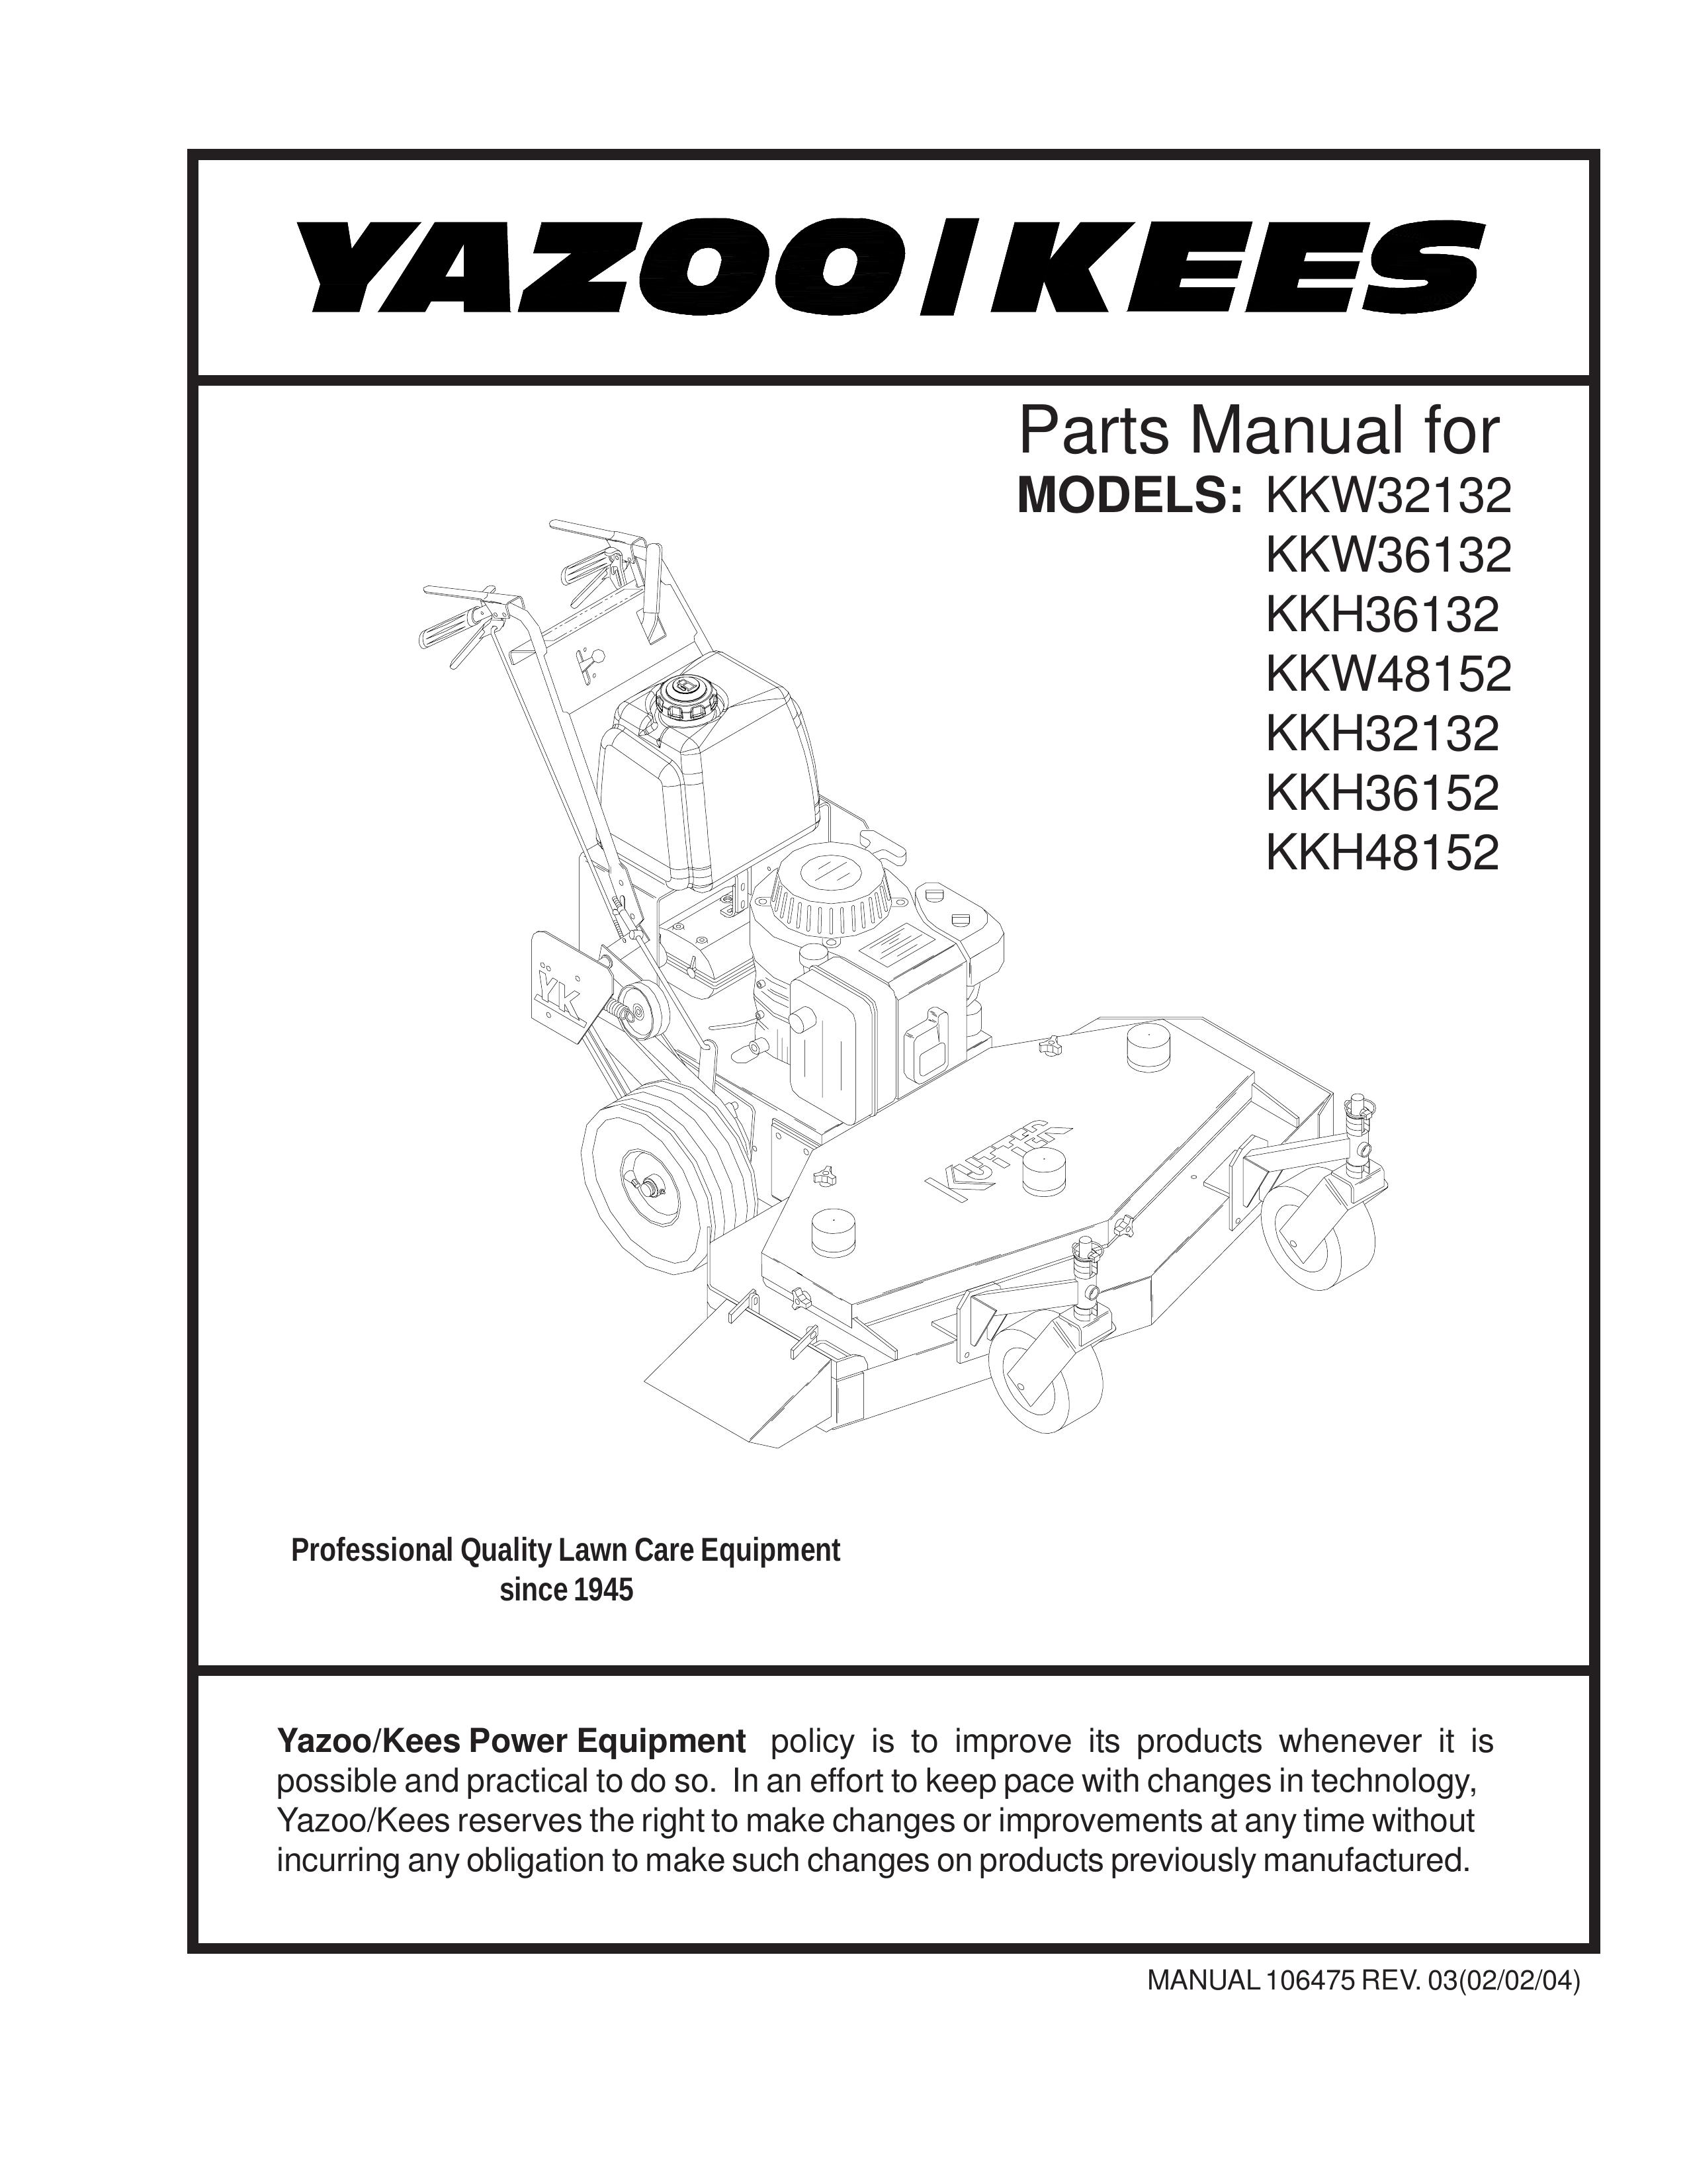 Yazoo/Kees KKH32132 Lawn Mower User Manual